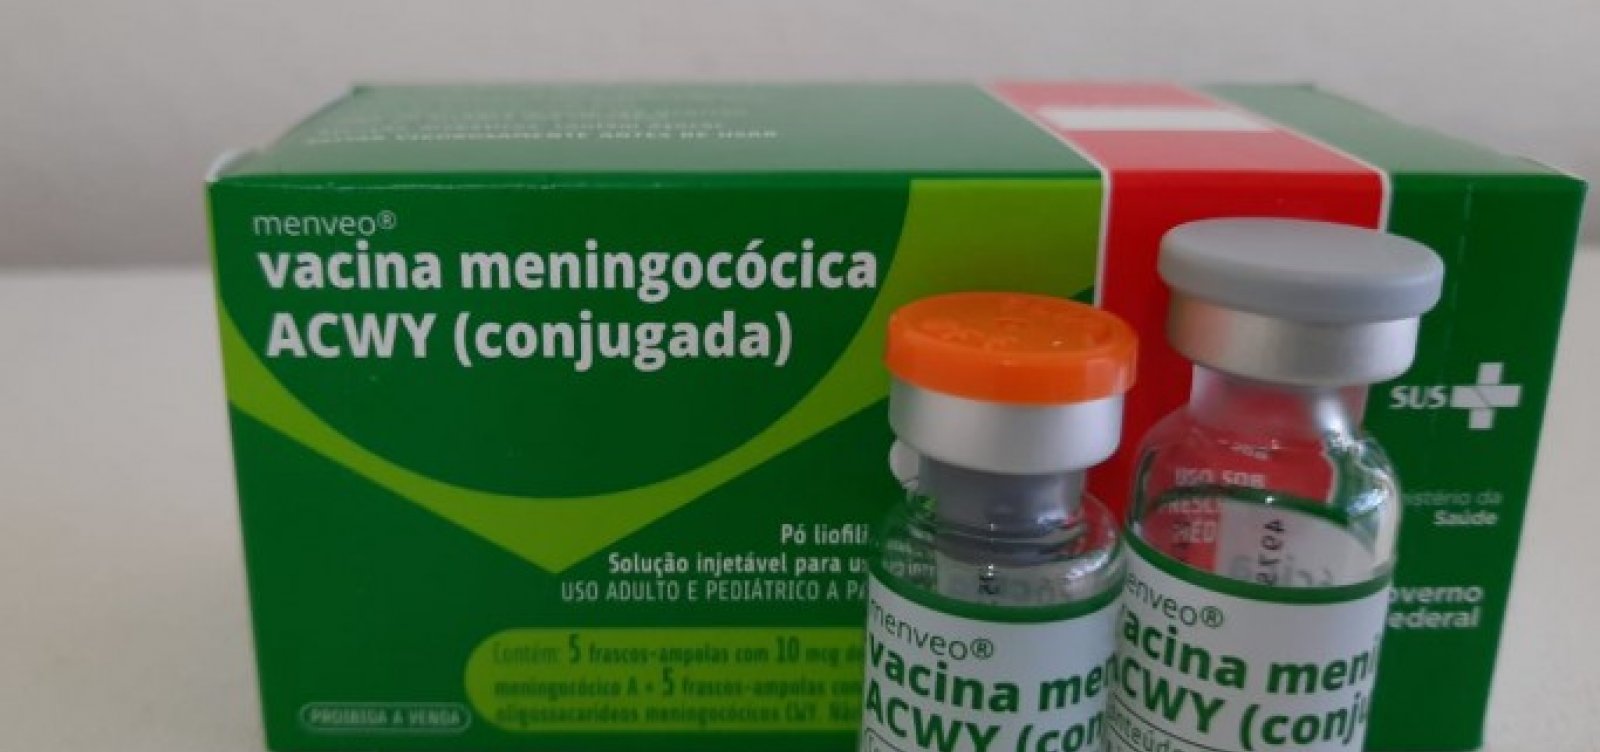 Salvador passa a oferecer vacina meningocócica ACWY a partir de segunda-feira